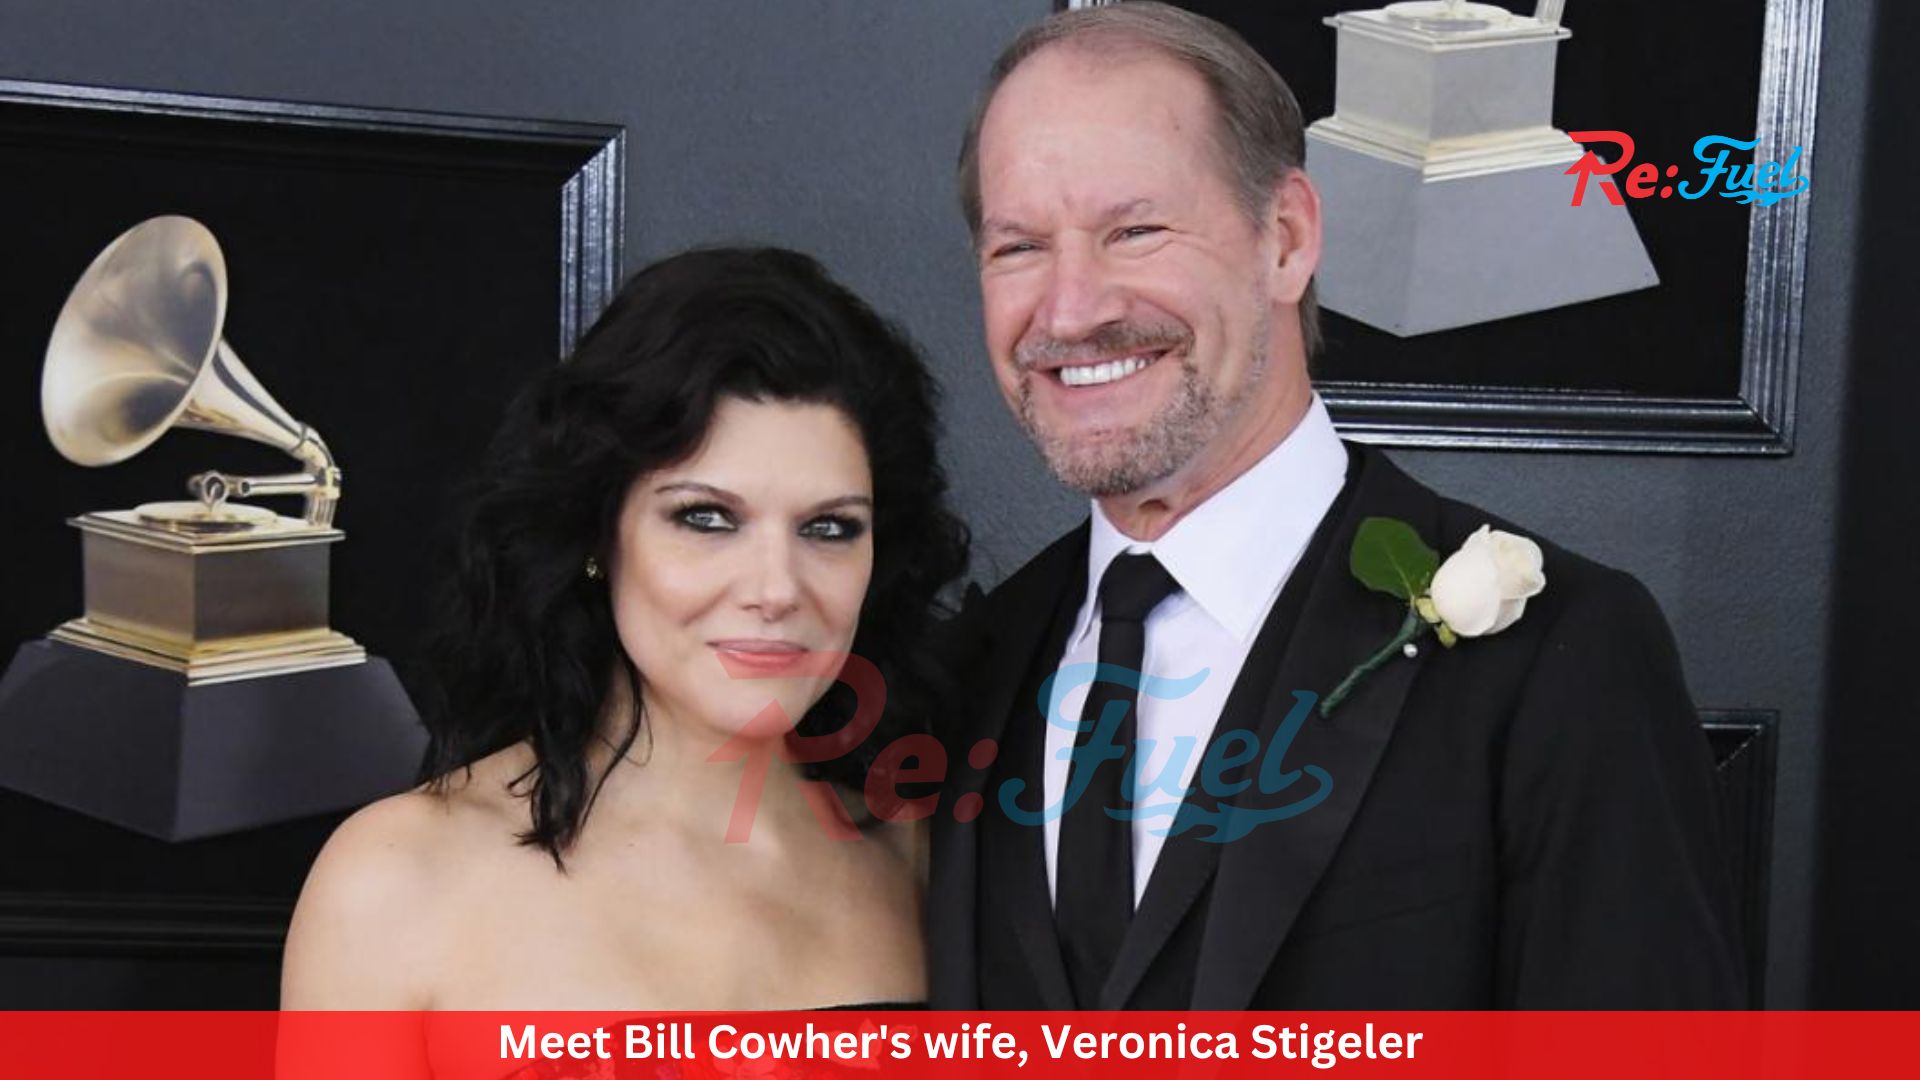 Meet Bill Cowher's wife, Veronica Stigeler